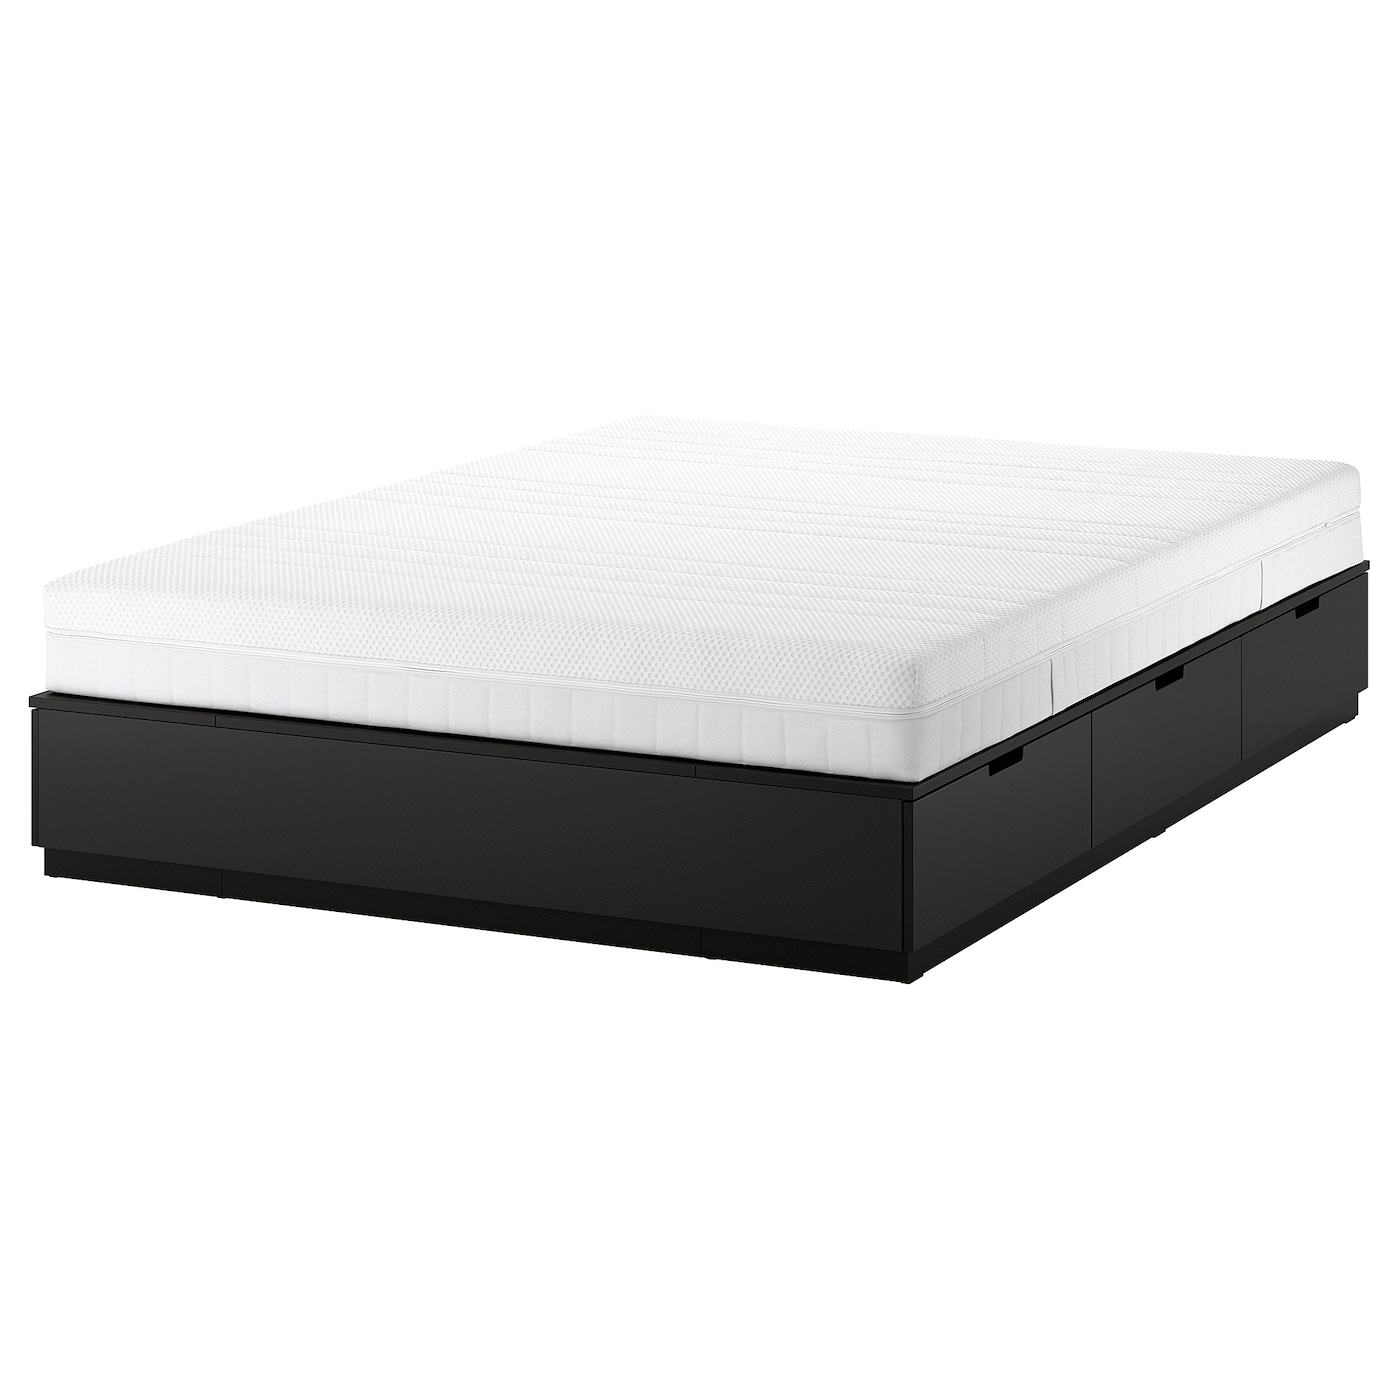 Каркас кровати с контейнером и матрасом - IKEA NORDLI, 200х160 см, матрас средне-жесткий, черный, НОРДЛИ ИКЕА